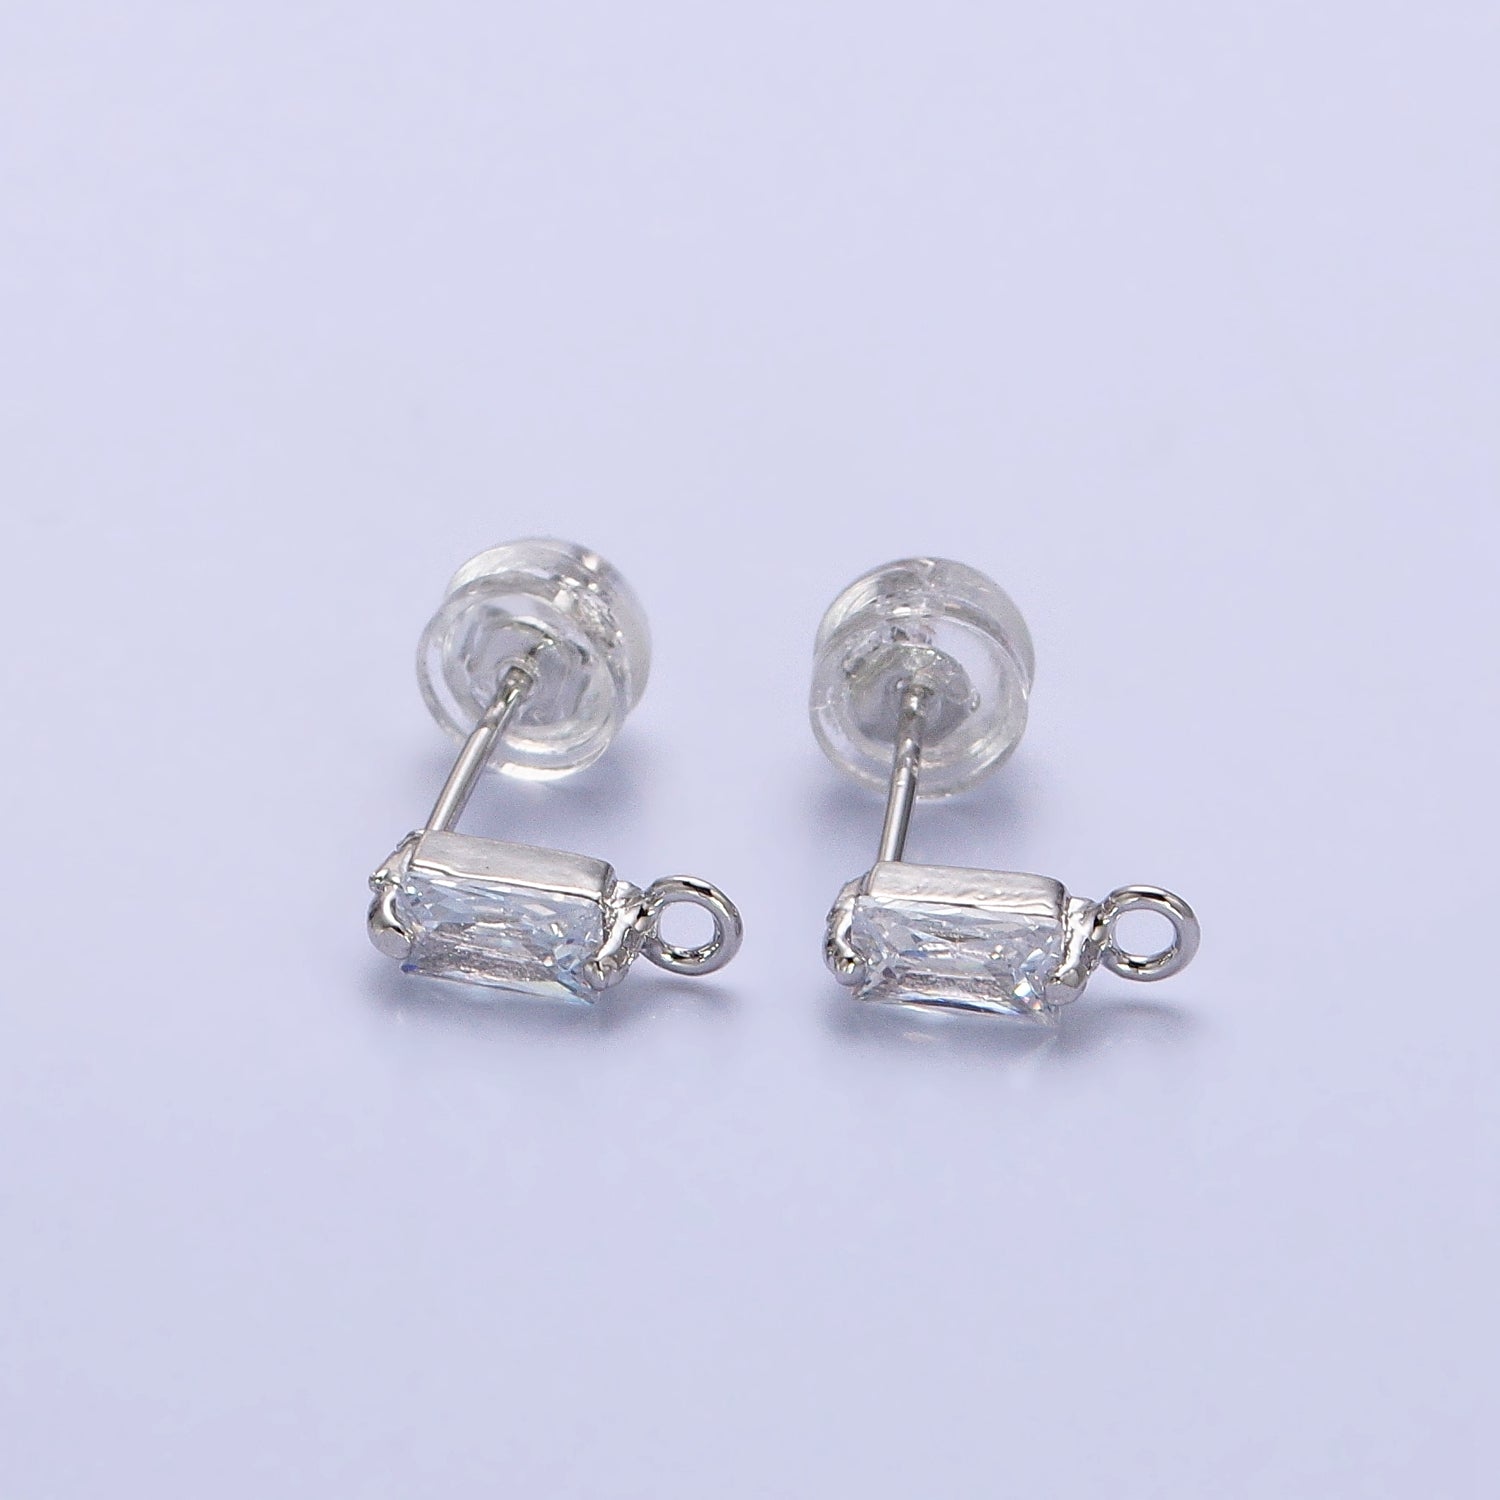 Emerald Cut CZ Diamond Stud Earring Gold Earring Post with Open Link for Earring Supply Z-178 Z-179